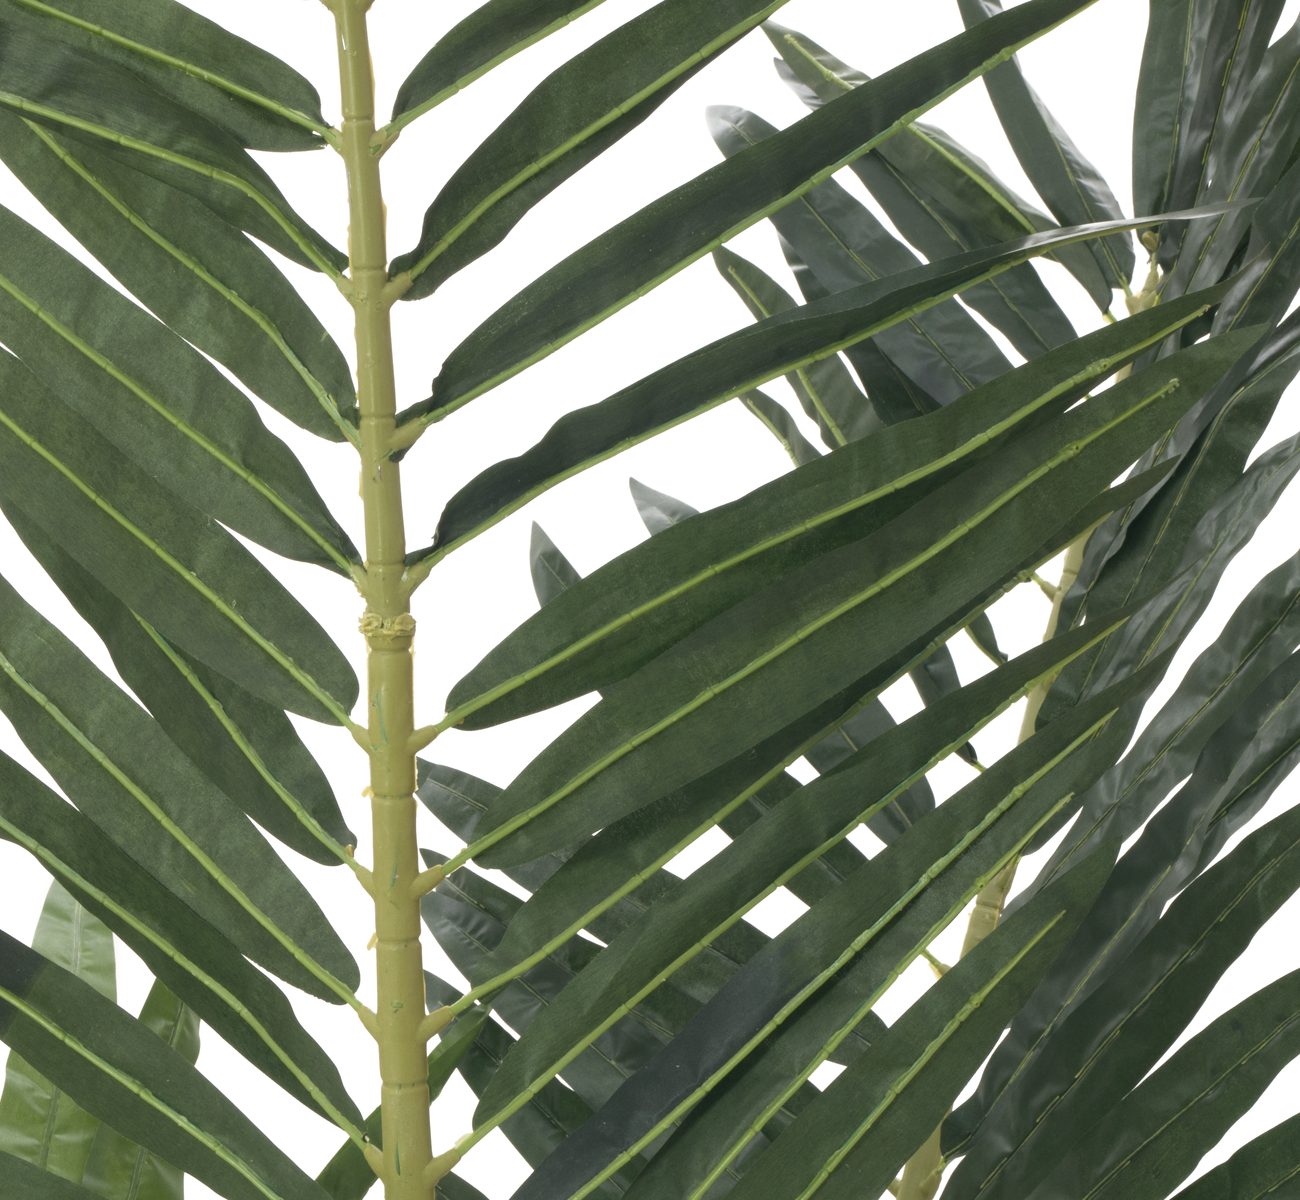 plante-artificielle-palmier